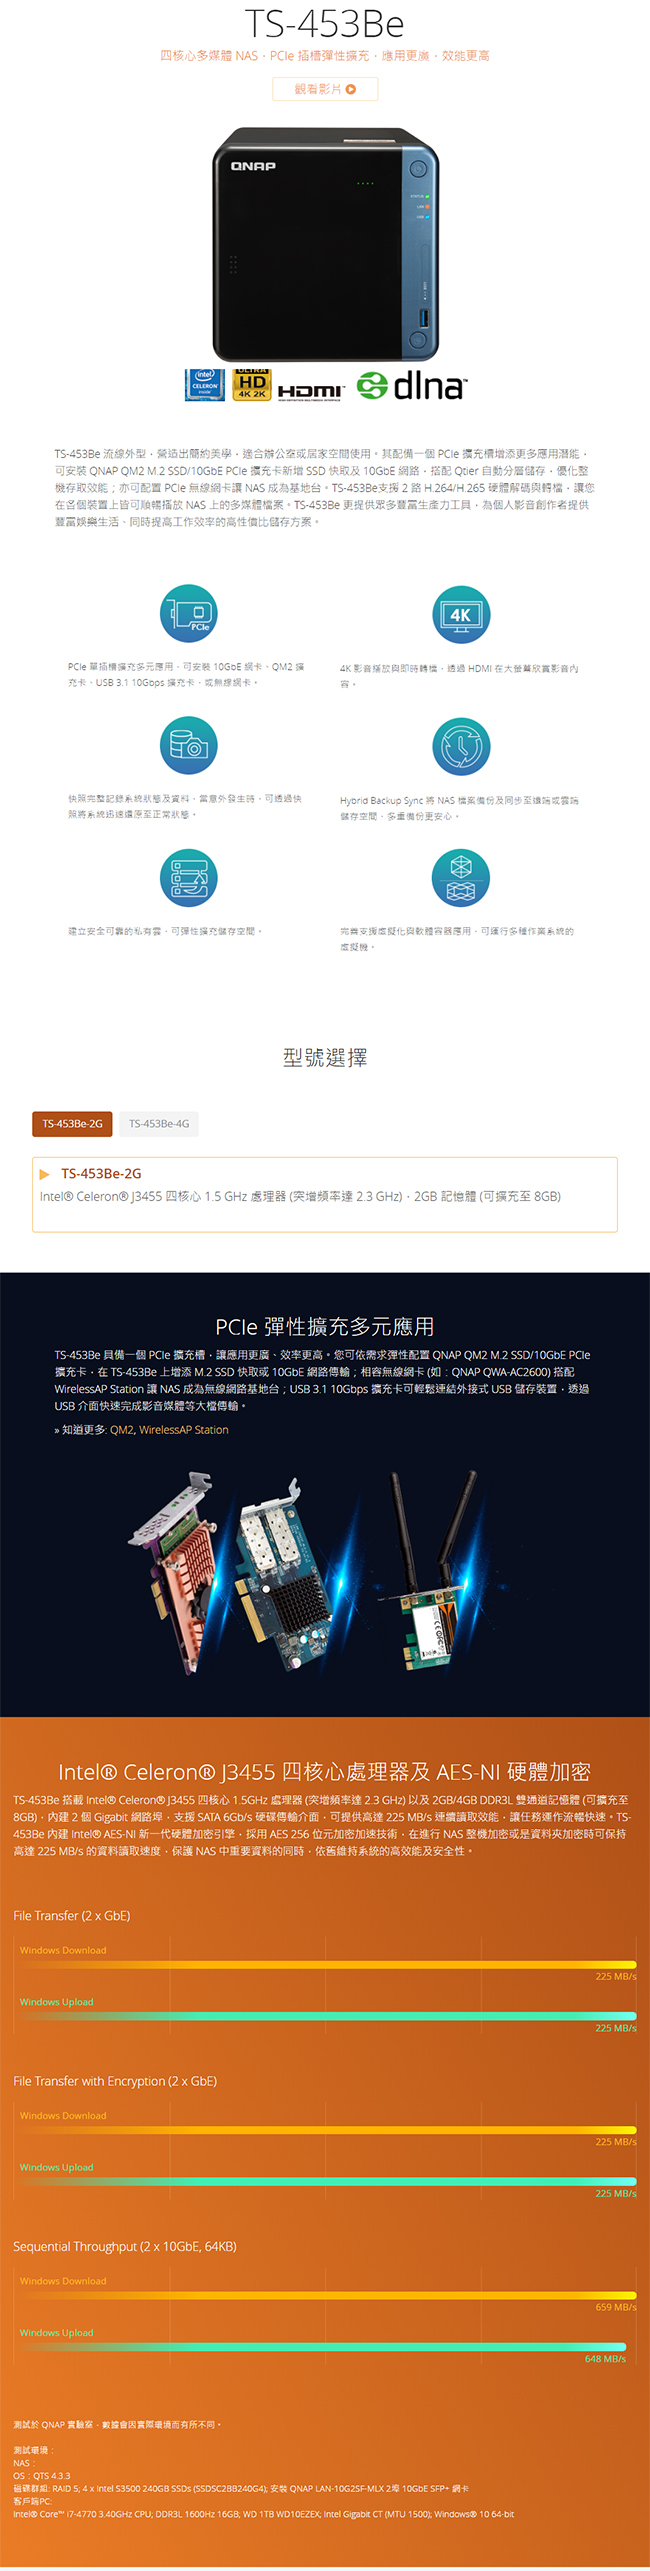 QNAP 威聯通 TS-453Be-4G 4Bay 網路儲存伺服器